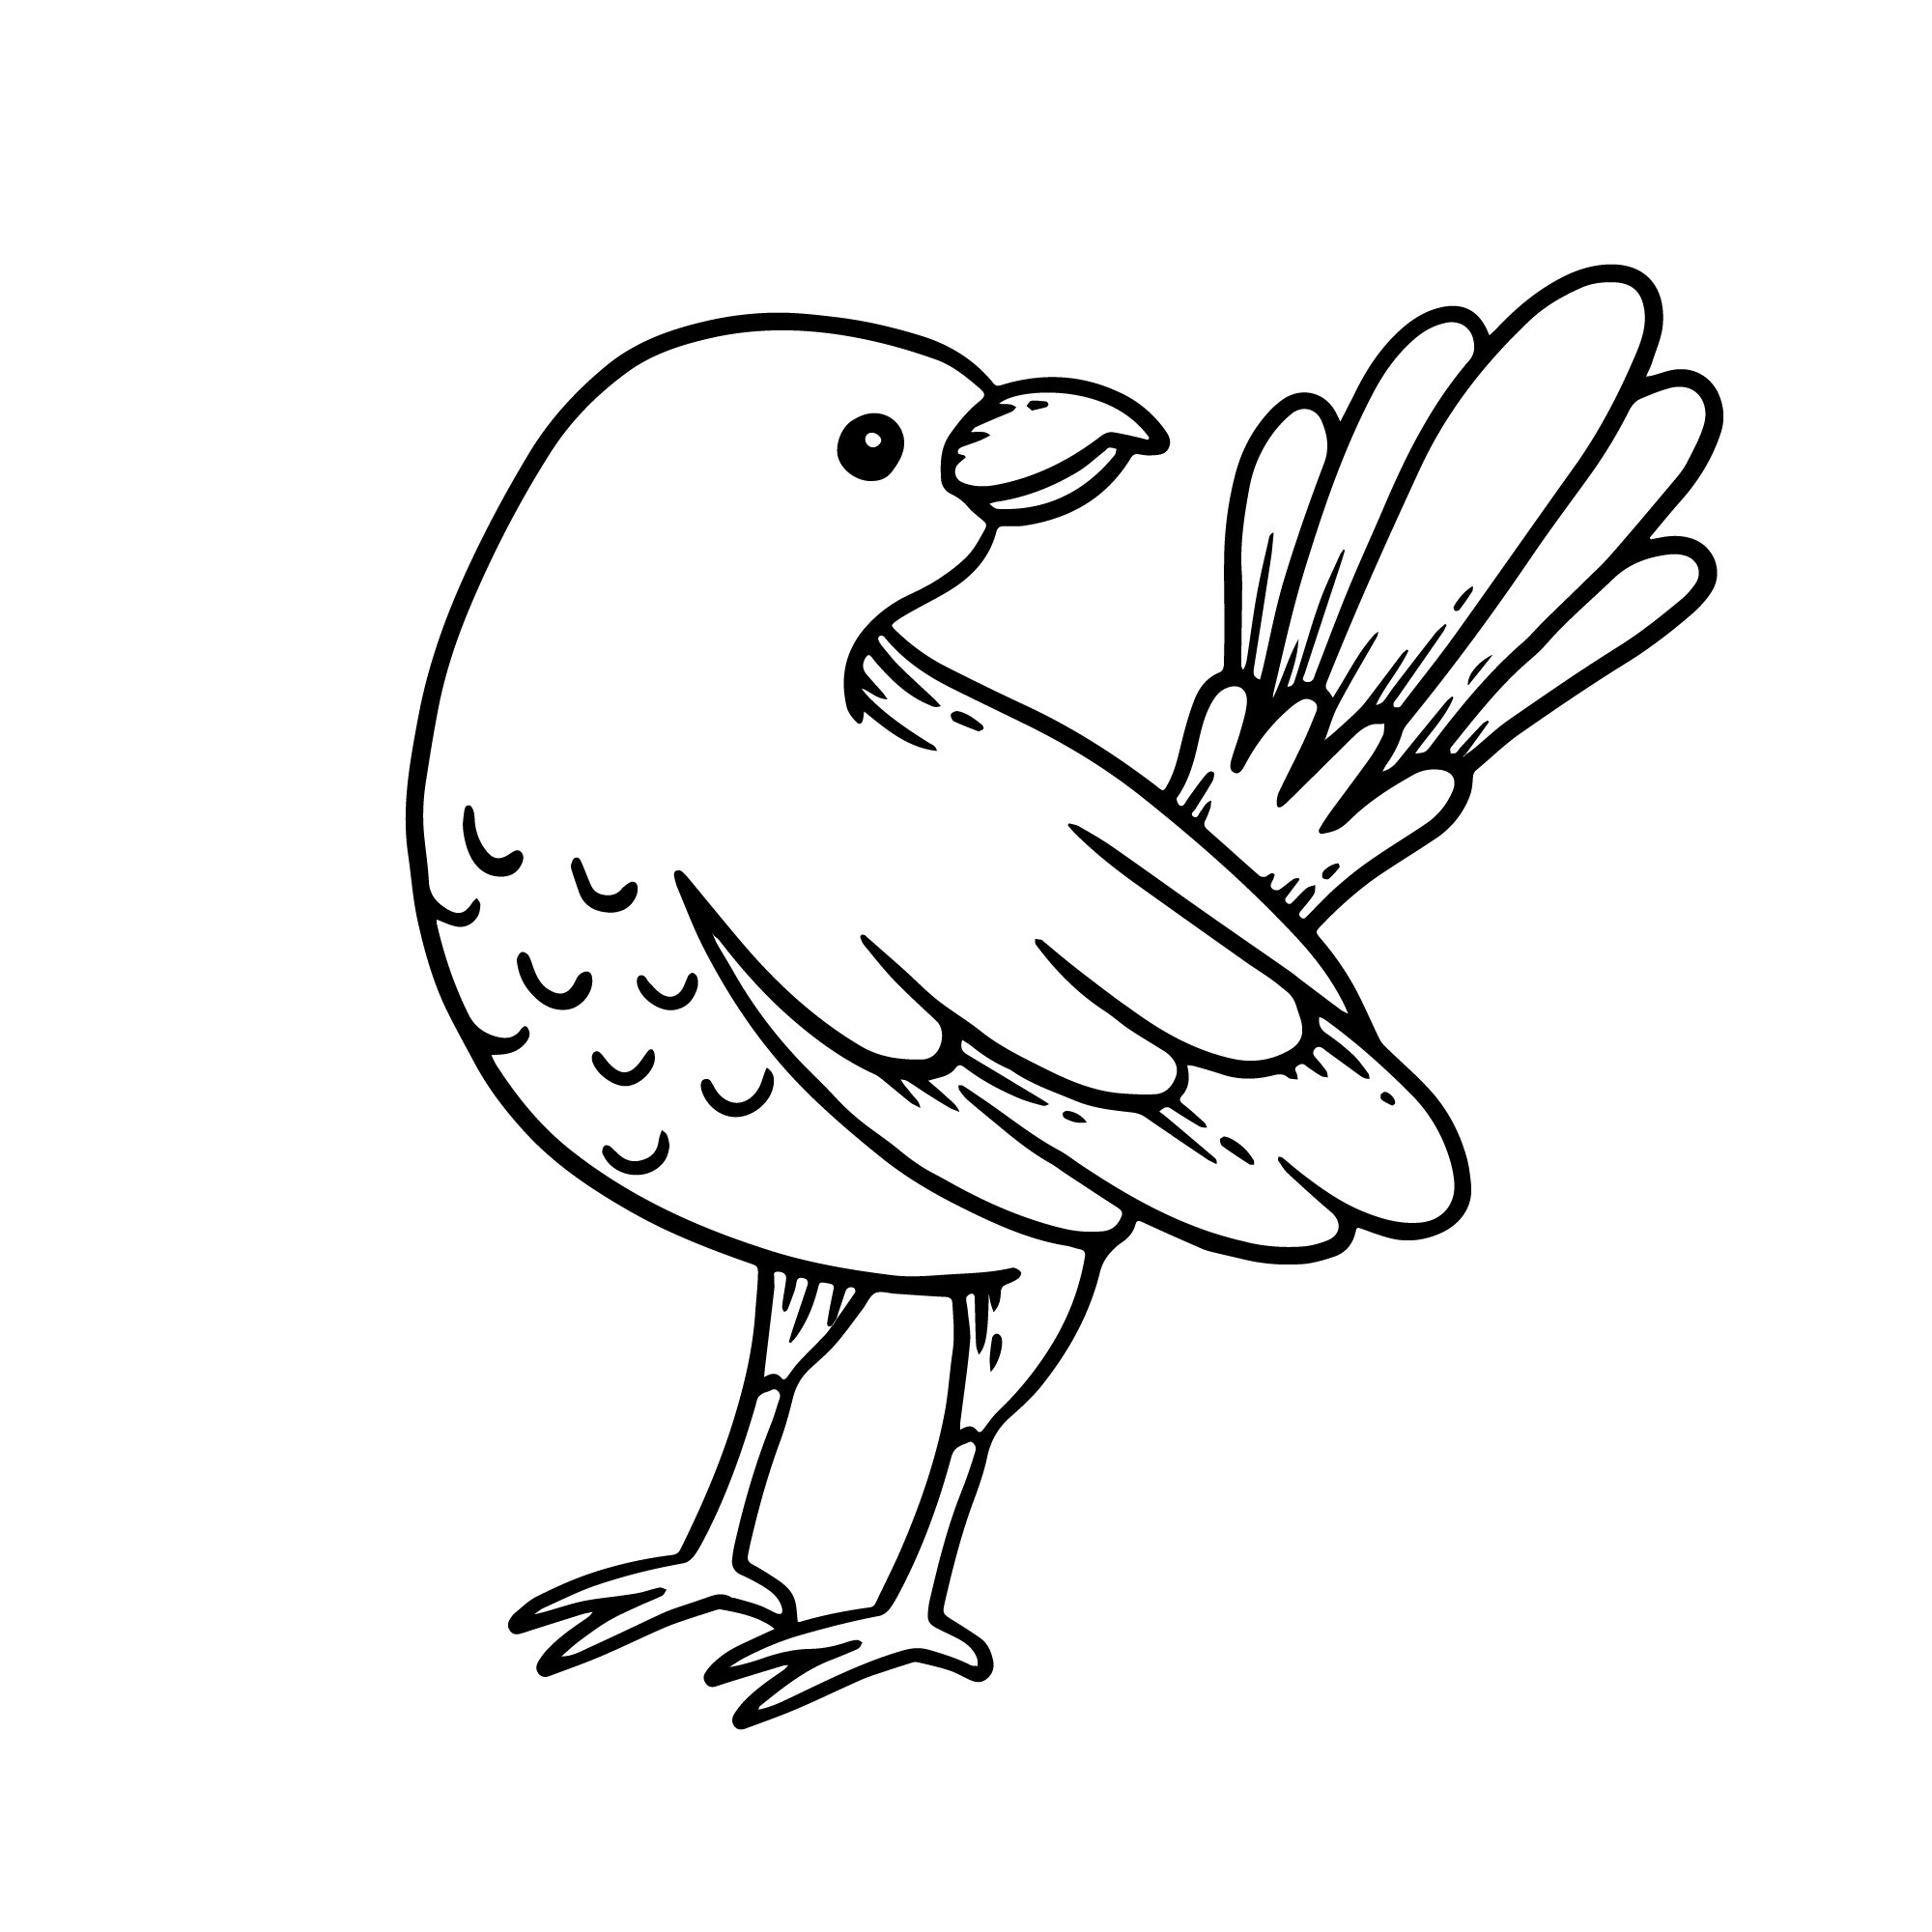 Раскраска для детей: контур маленькой птицы с необычным хвостом